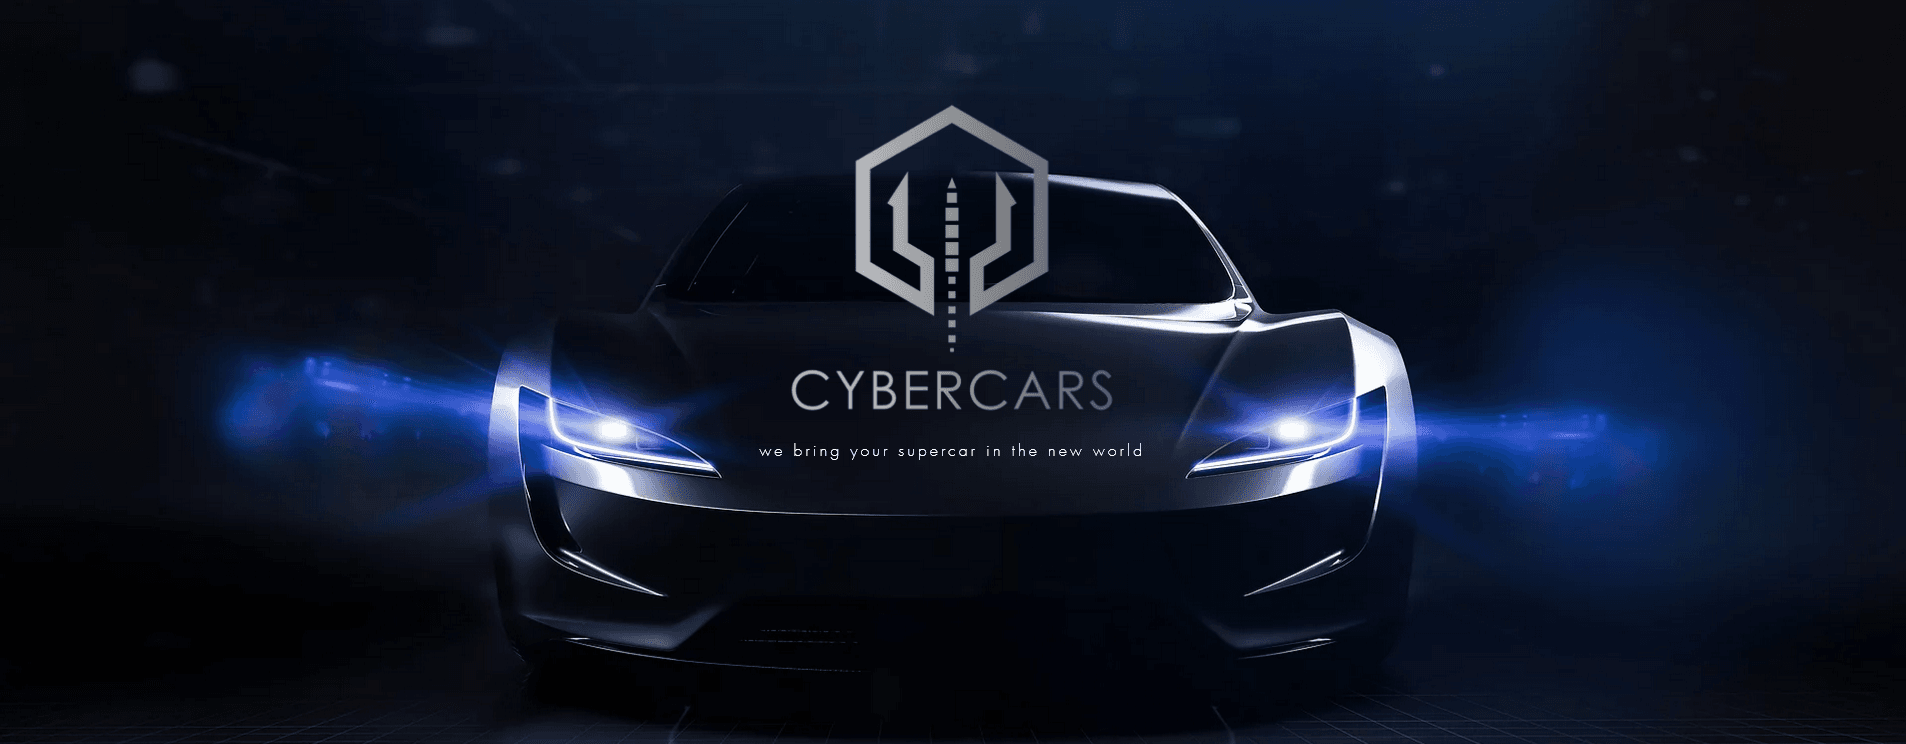 CyberCar バナー